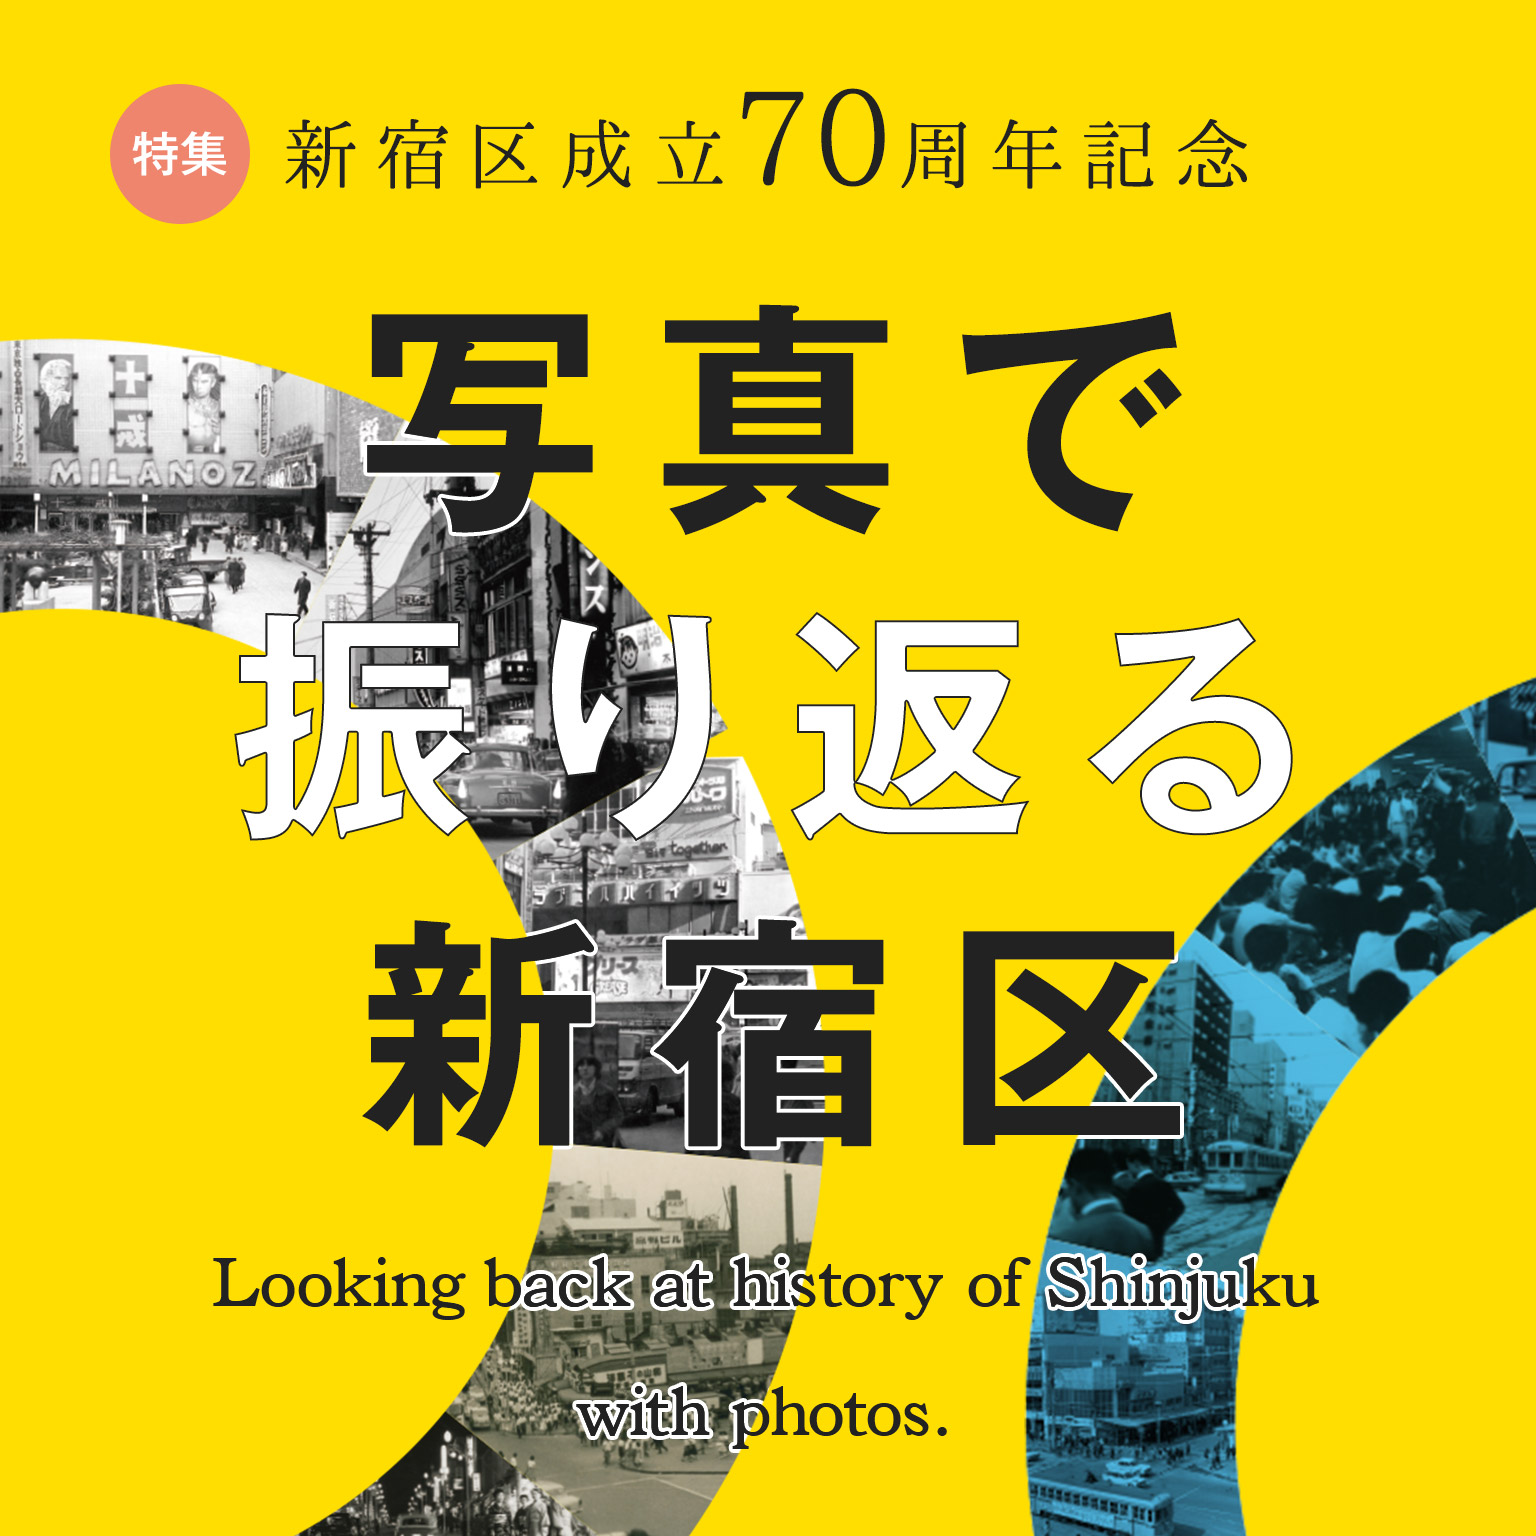 在專刊新宿區成立70周年紀念照片回頭看的新宿區